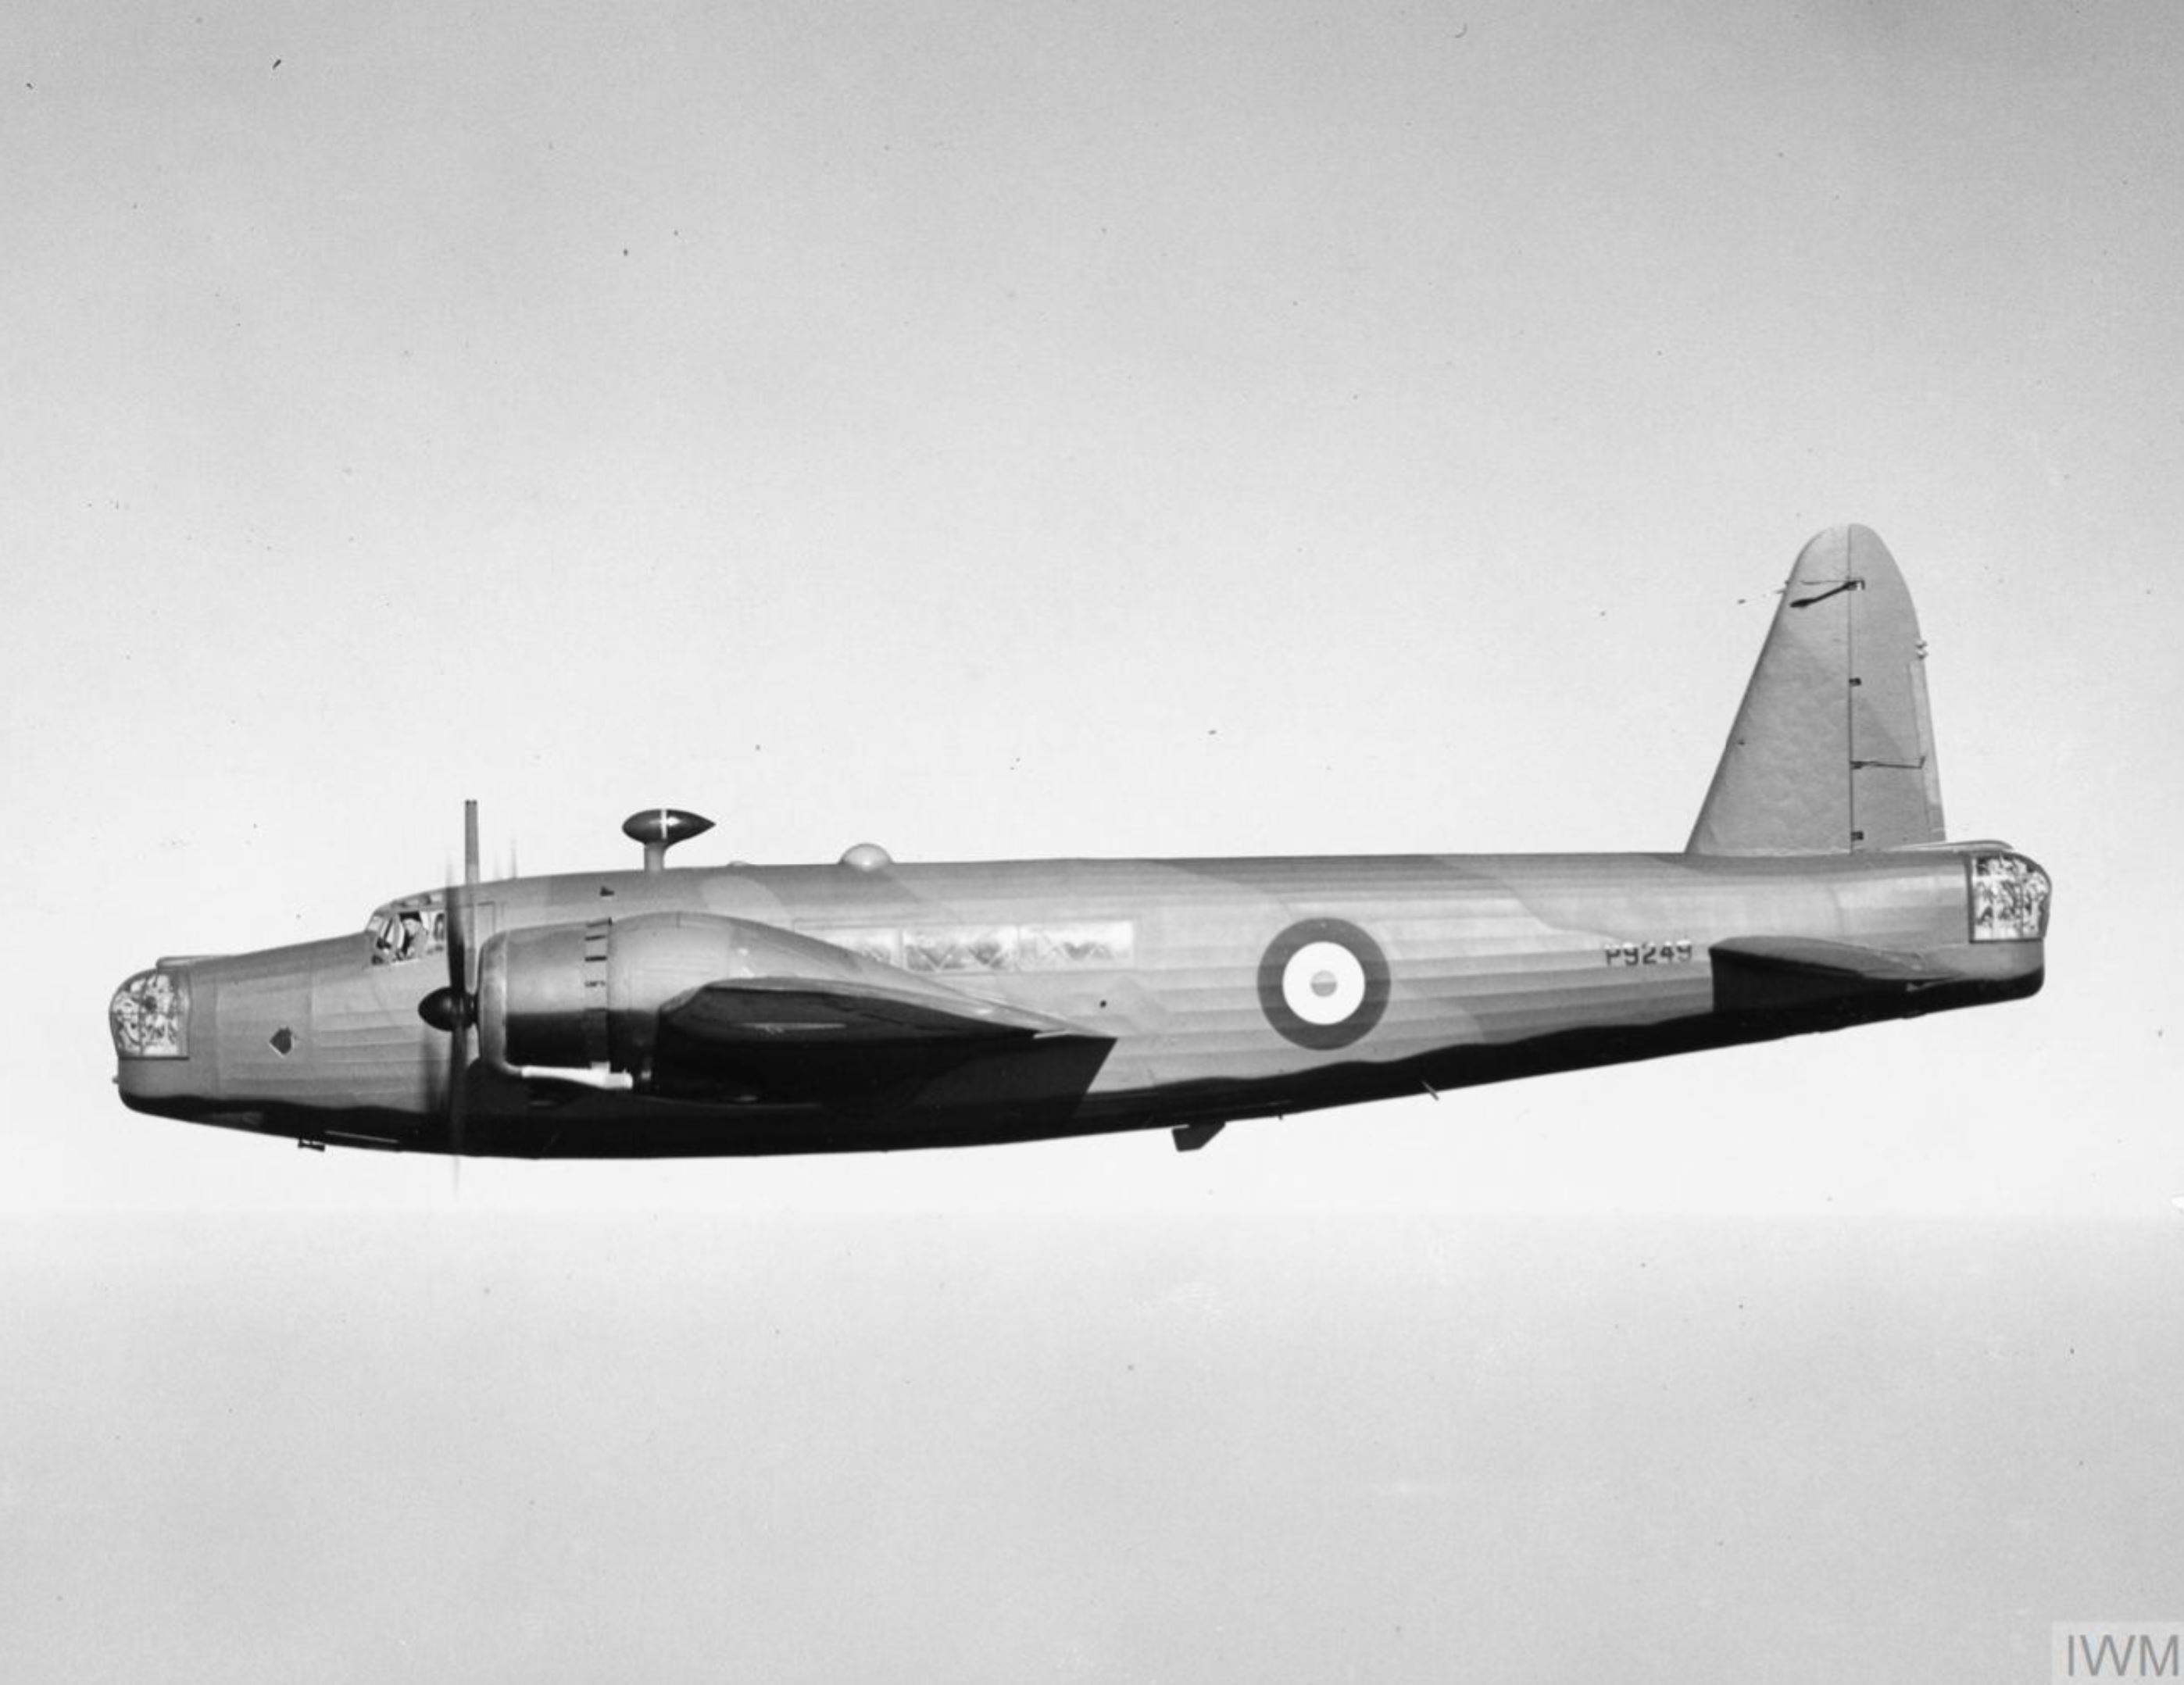 Vickers Wellington Ic RAF P9249 factory fresh in flight March 1940 IWM HU104763